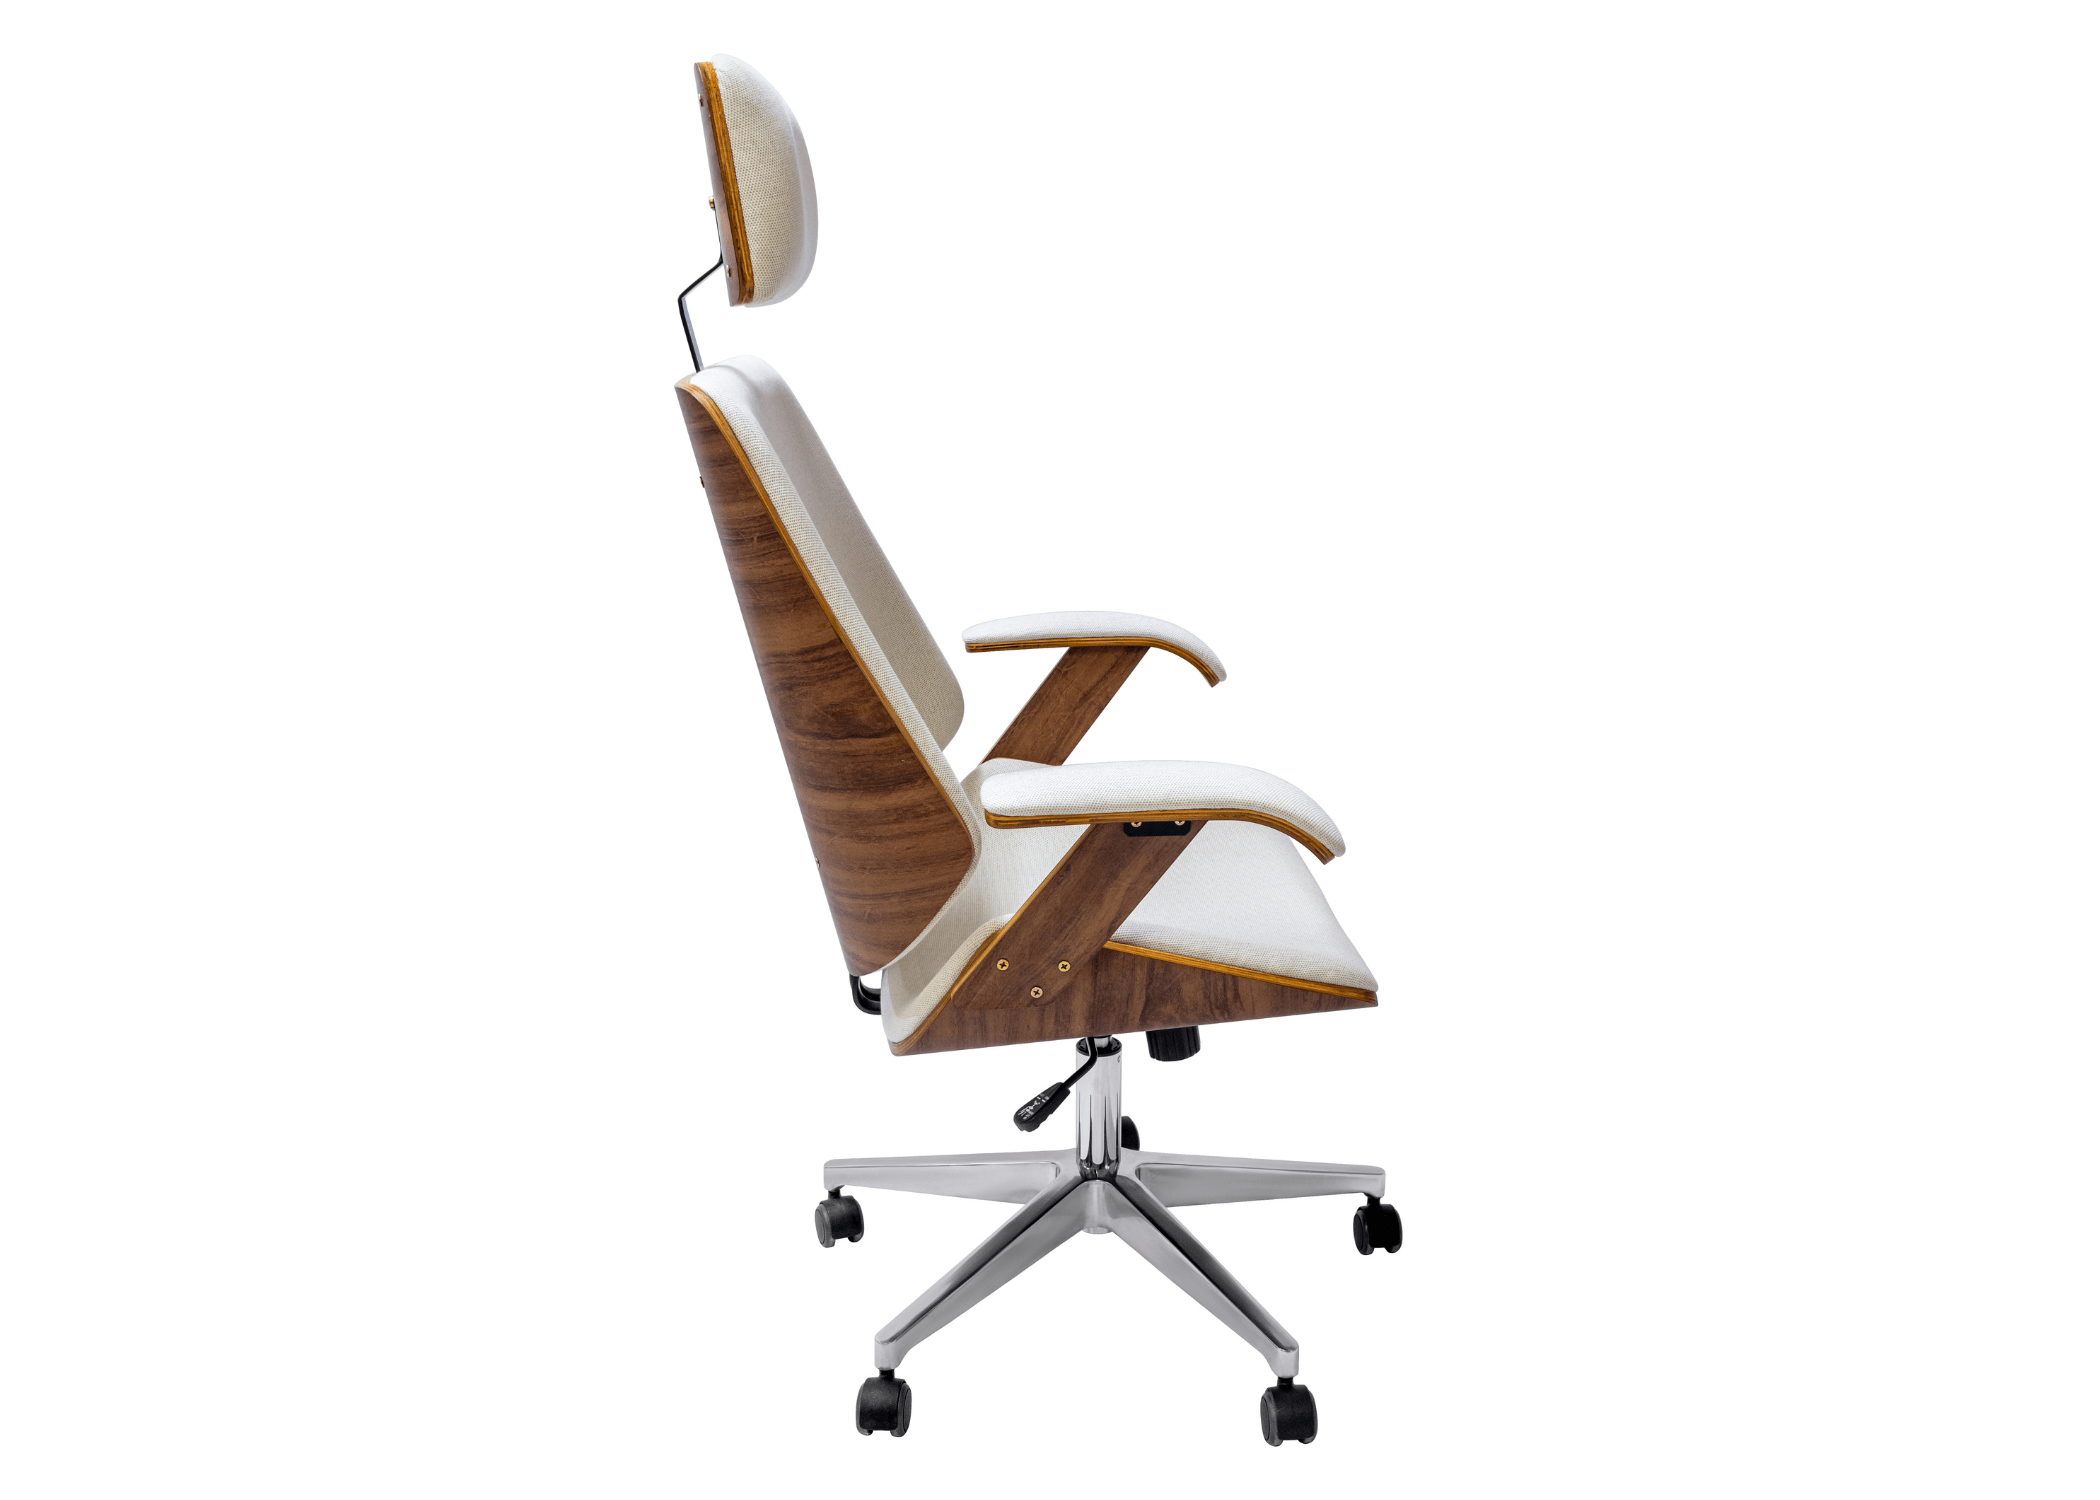 Detalhes refinados: Cadeira Presidente Jocasta com acabamento laminado e estrutura em alumínio polido.